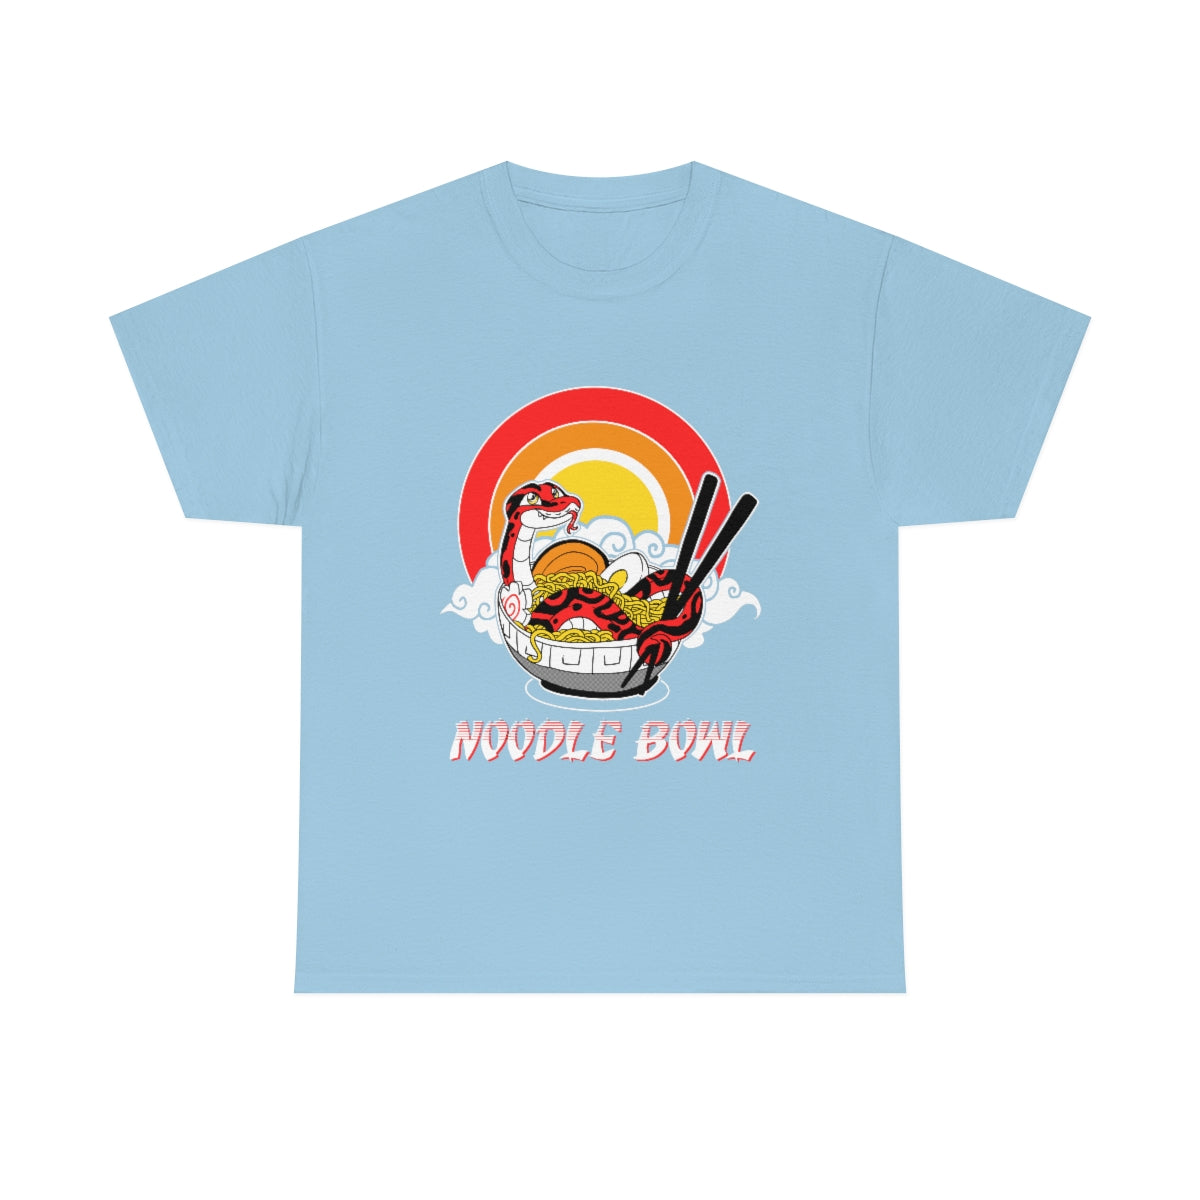 Noodle Bowl - T-Shirt T-Shirt Crunchy Crowe Light Blue S 